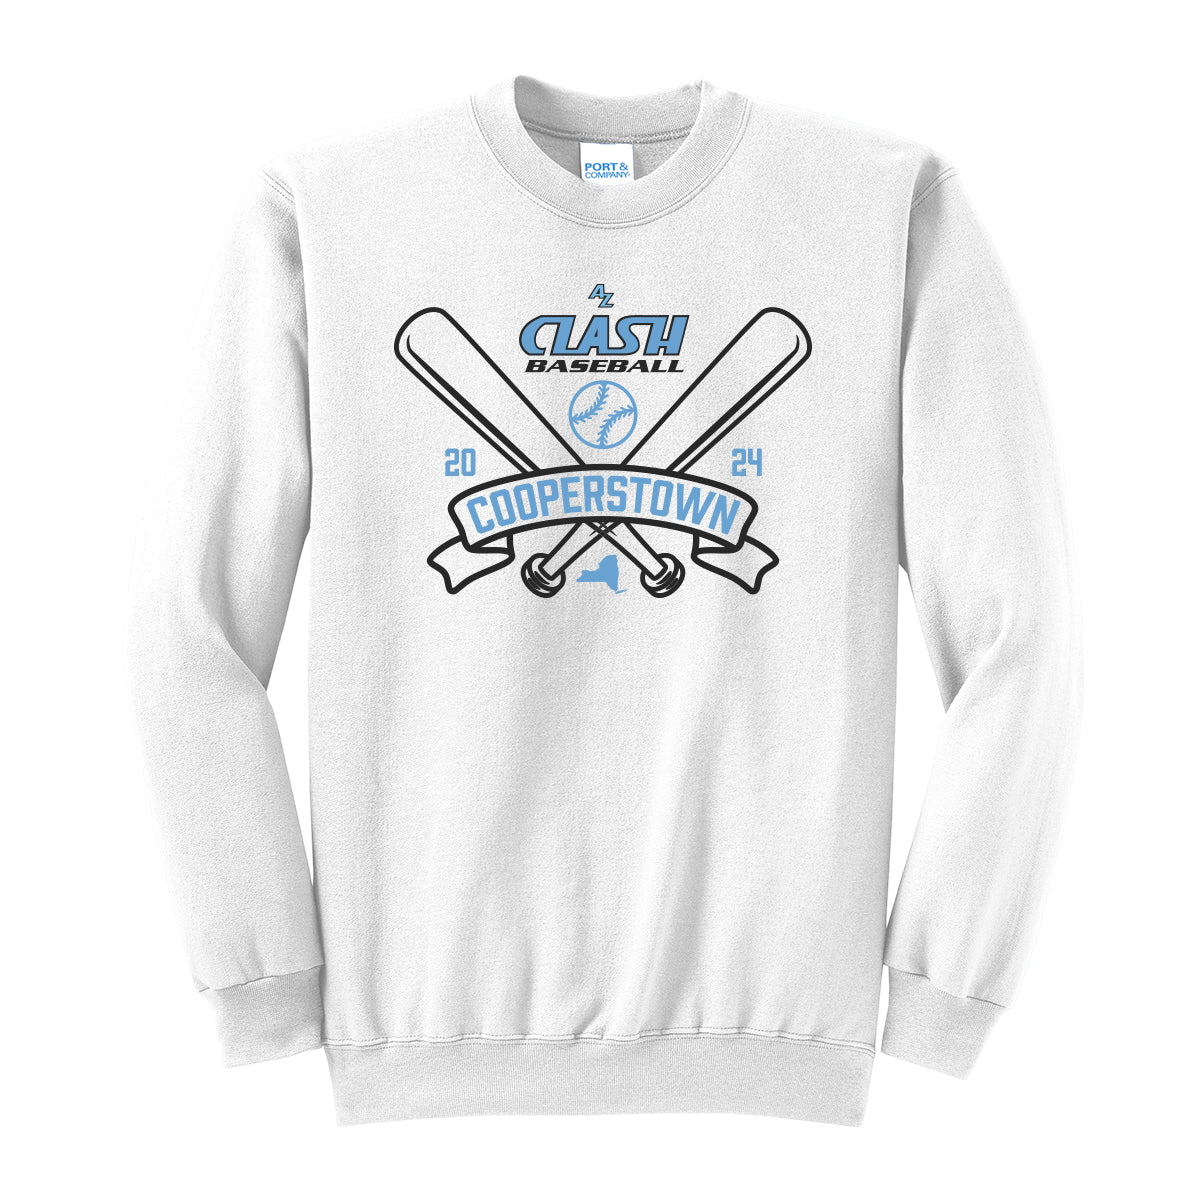 AZ Clash Cooperstown Crewneck Sweatshirt